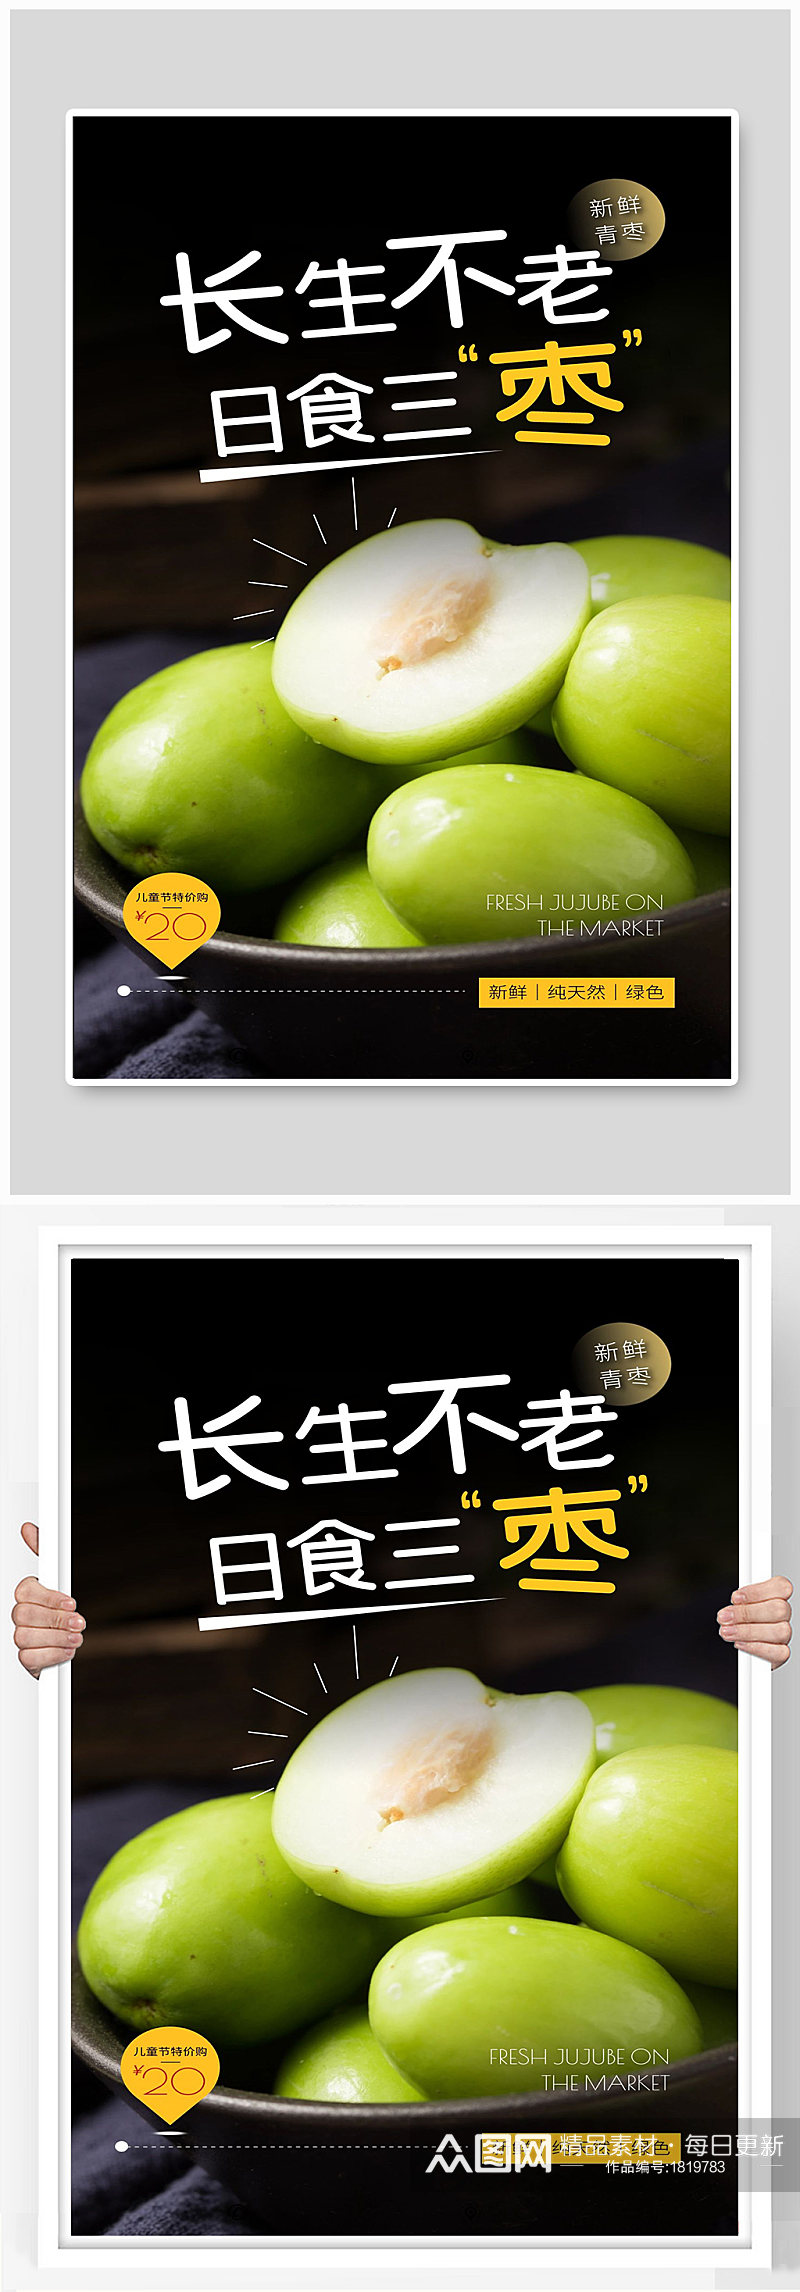 青枣是食三枣长生不老水果新鲜宣传海报素材